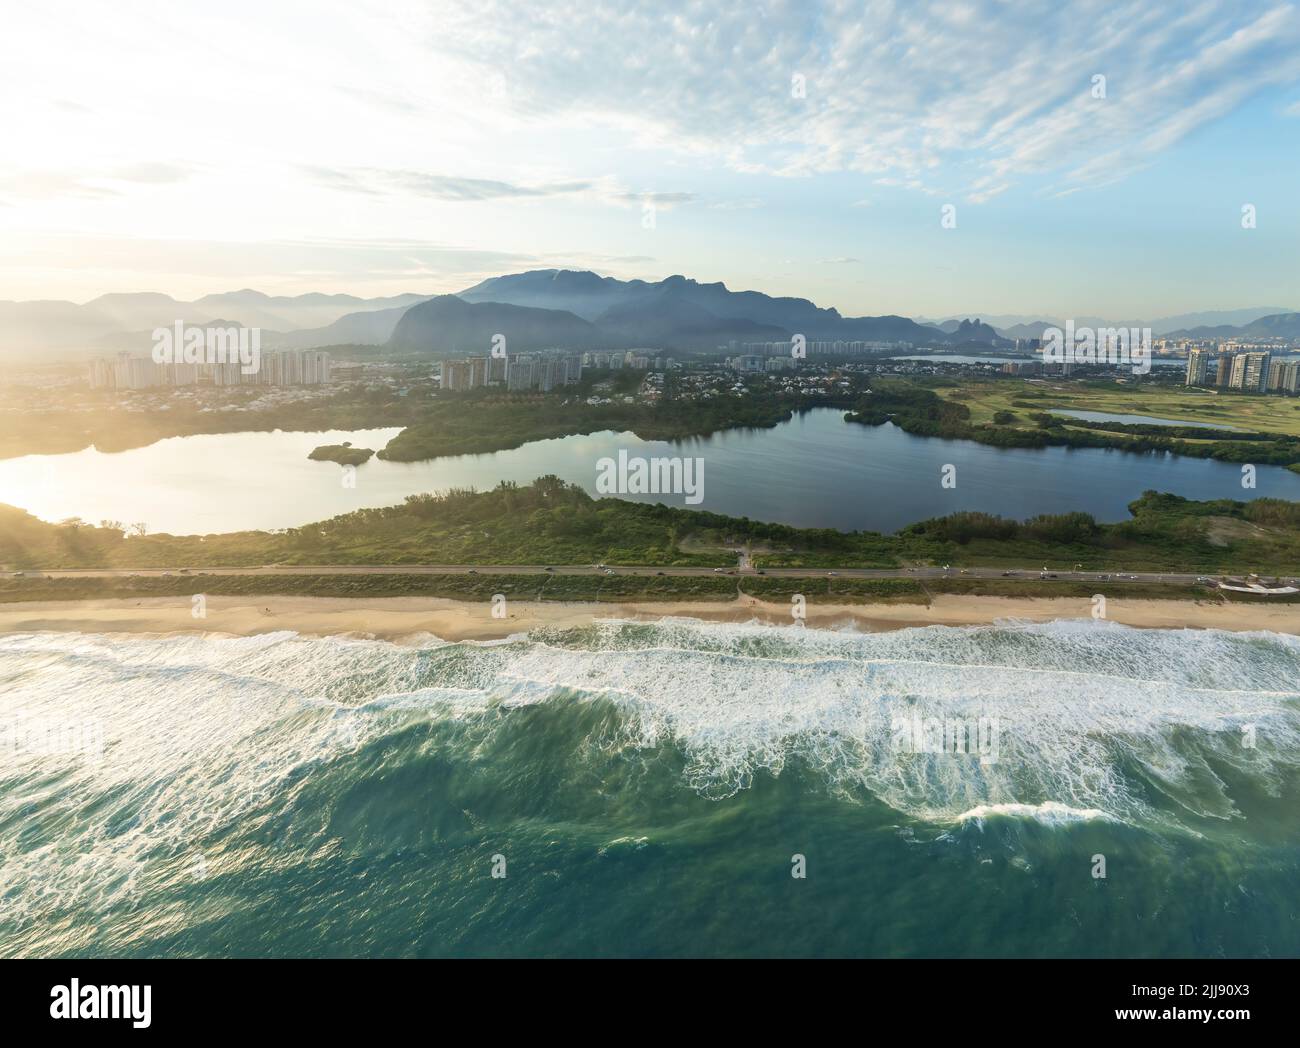 Luftaufnahme von Reserva Beach, Marapendi Lagoon und Reserve in Barra da Tijuca - Rio de Janeiro, Brasilien Stockfoto